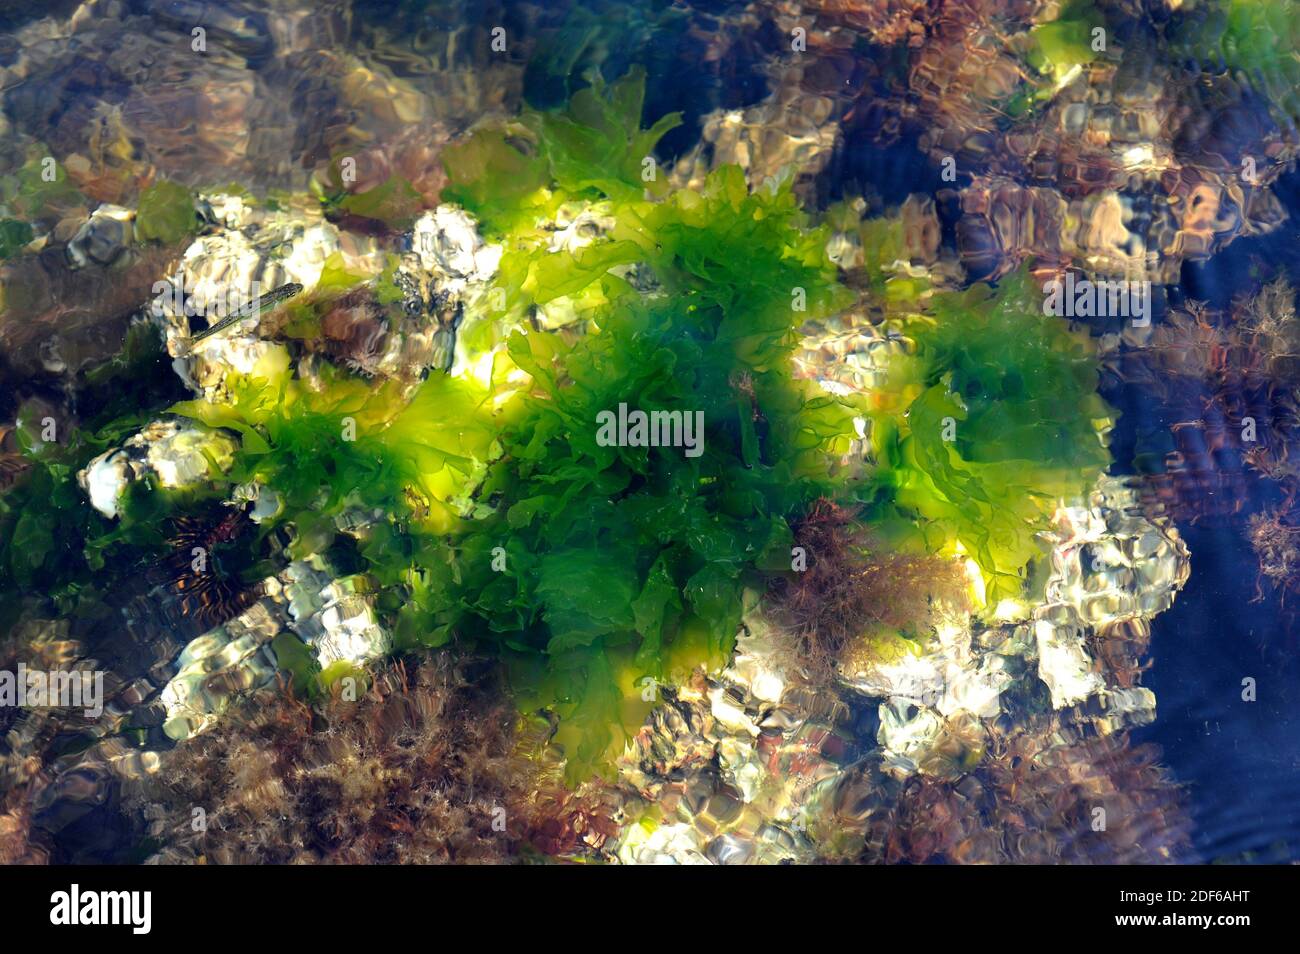 La lechuga de mar (Ulva lactuca) es una alga verde comestible. Clorofita. Ulvales. Ulvaceae. Cabo Creus, Girona, Cataluña, España. Mar Mediterráneo. Foto de stock